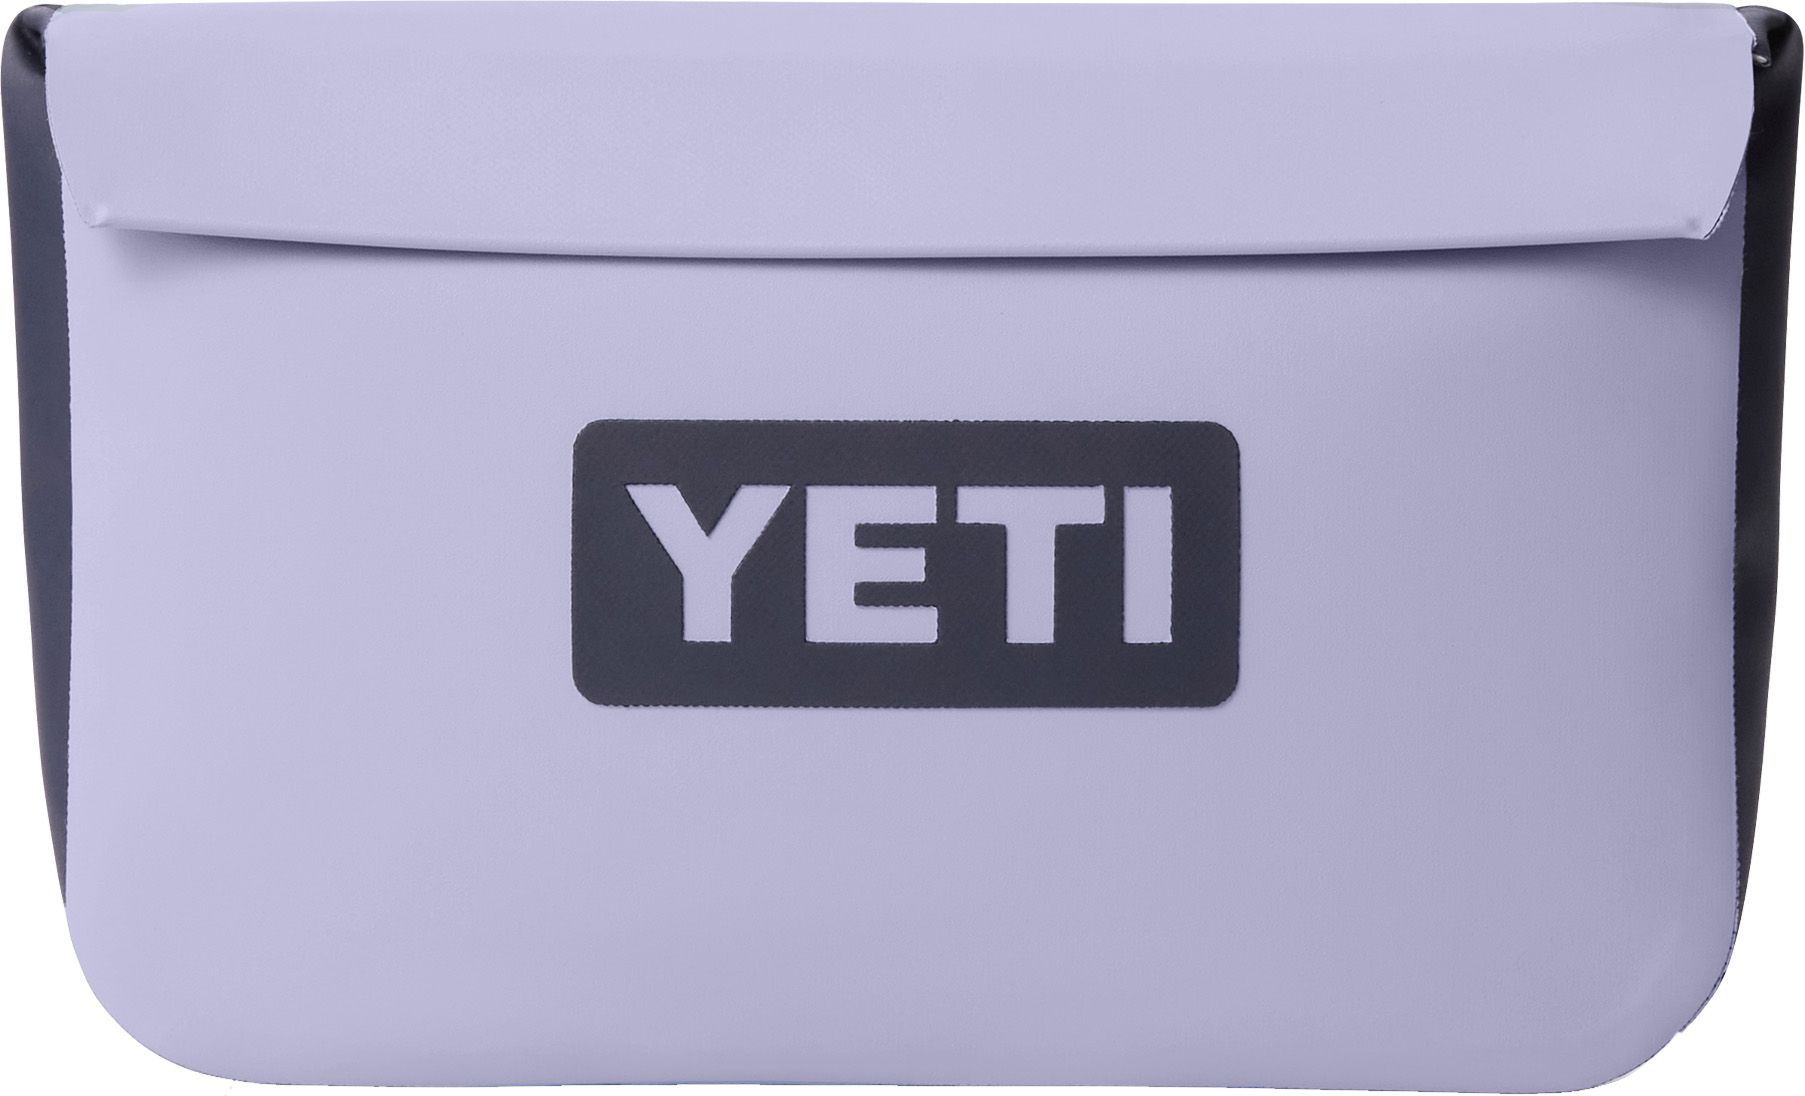 Yeti Sidekick Dry 3L Gear Case Black *Waterproof Dry Bag* for sale online